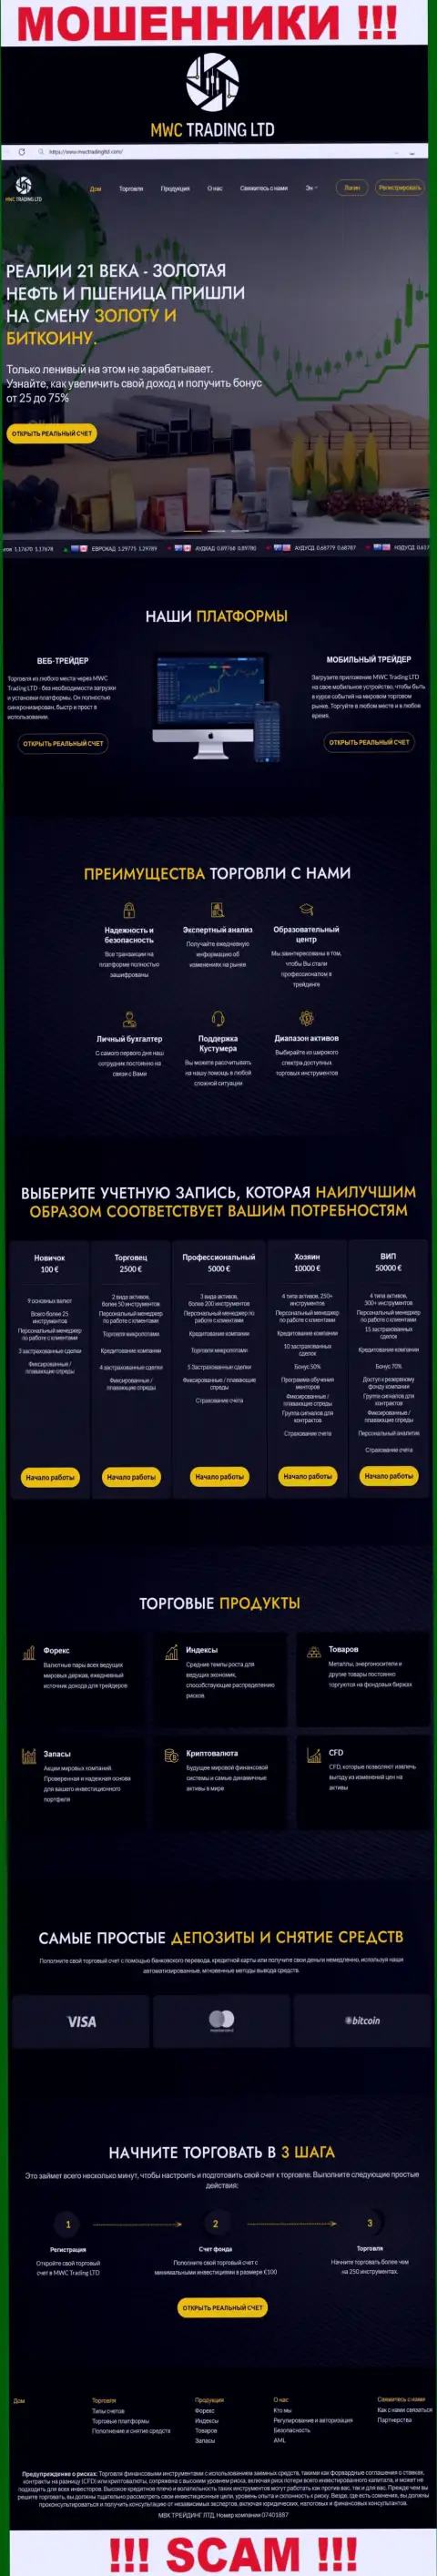 Скрин официального сайта мошеннической конторы MWCTradingLtd